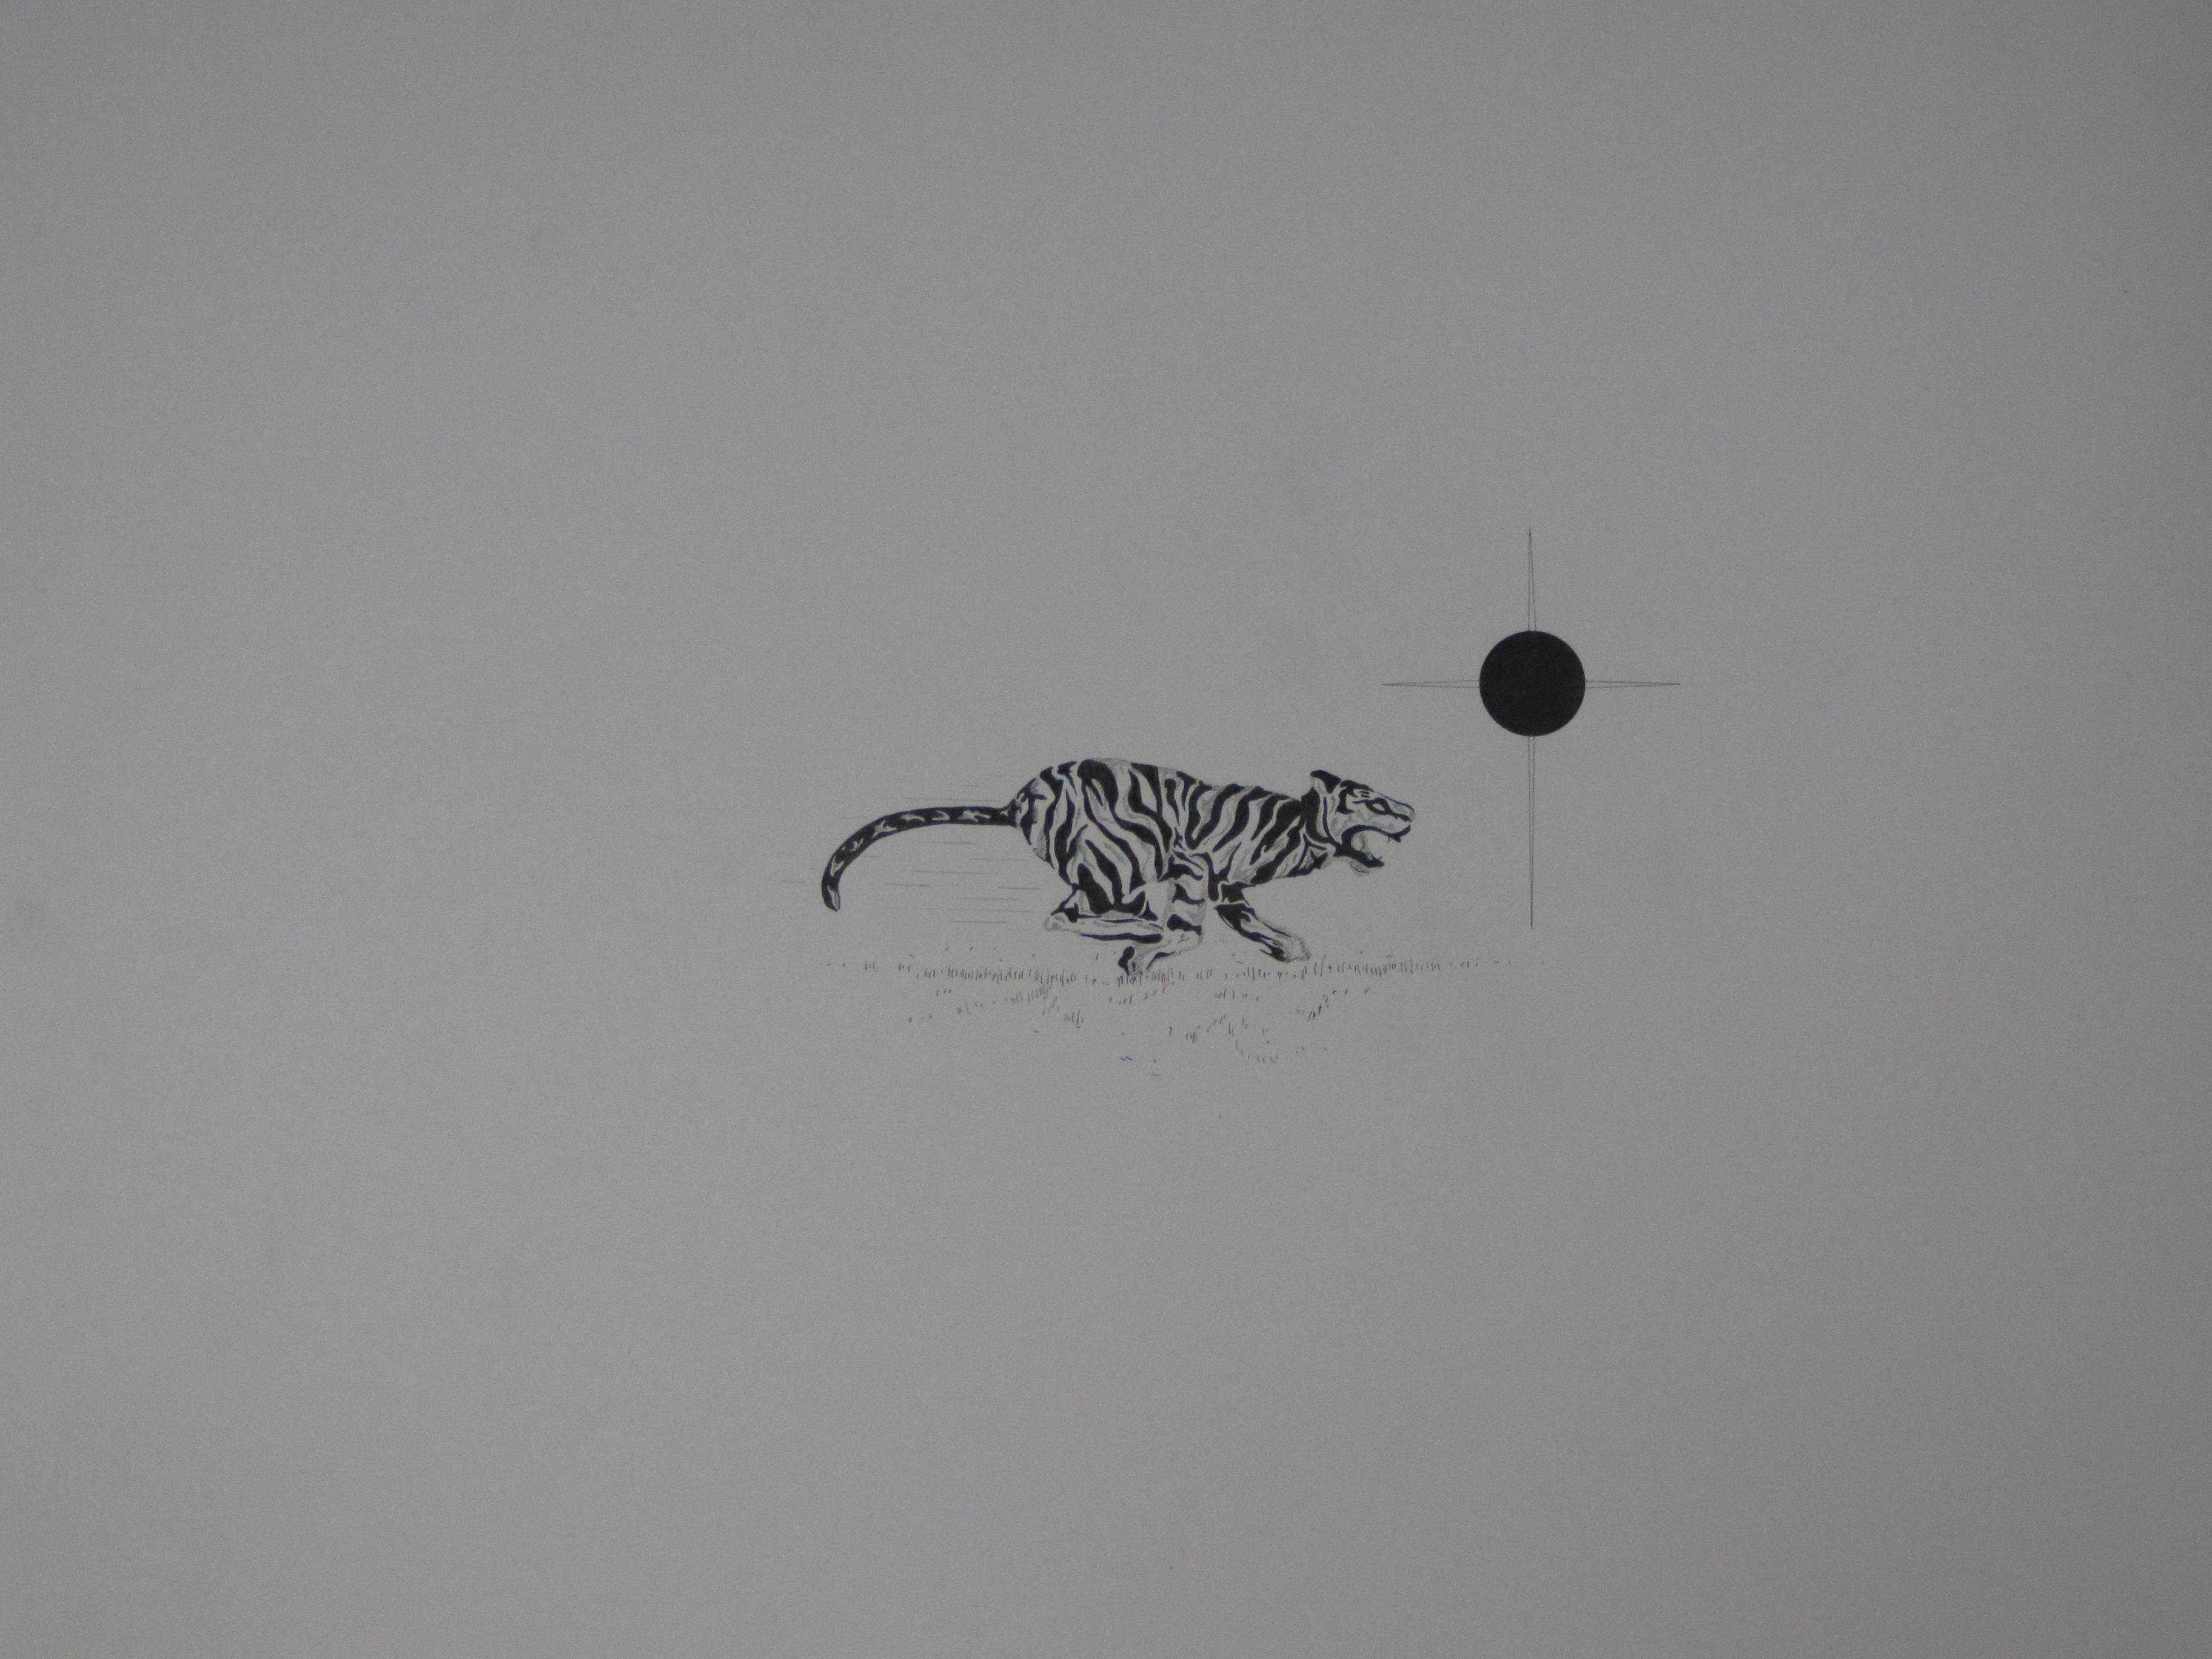 Tiger Image, Pen & Ink